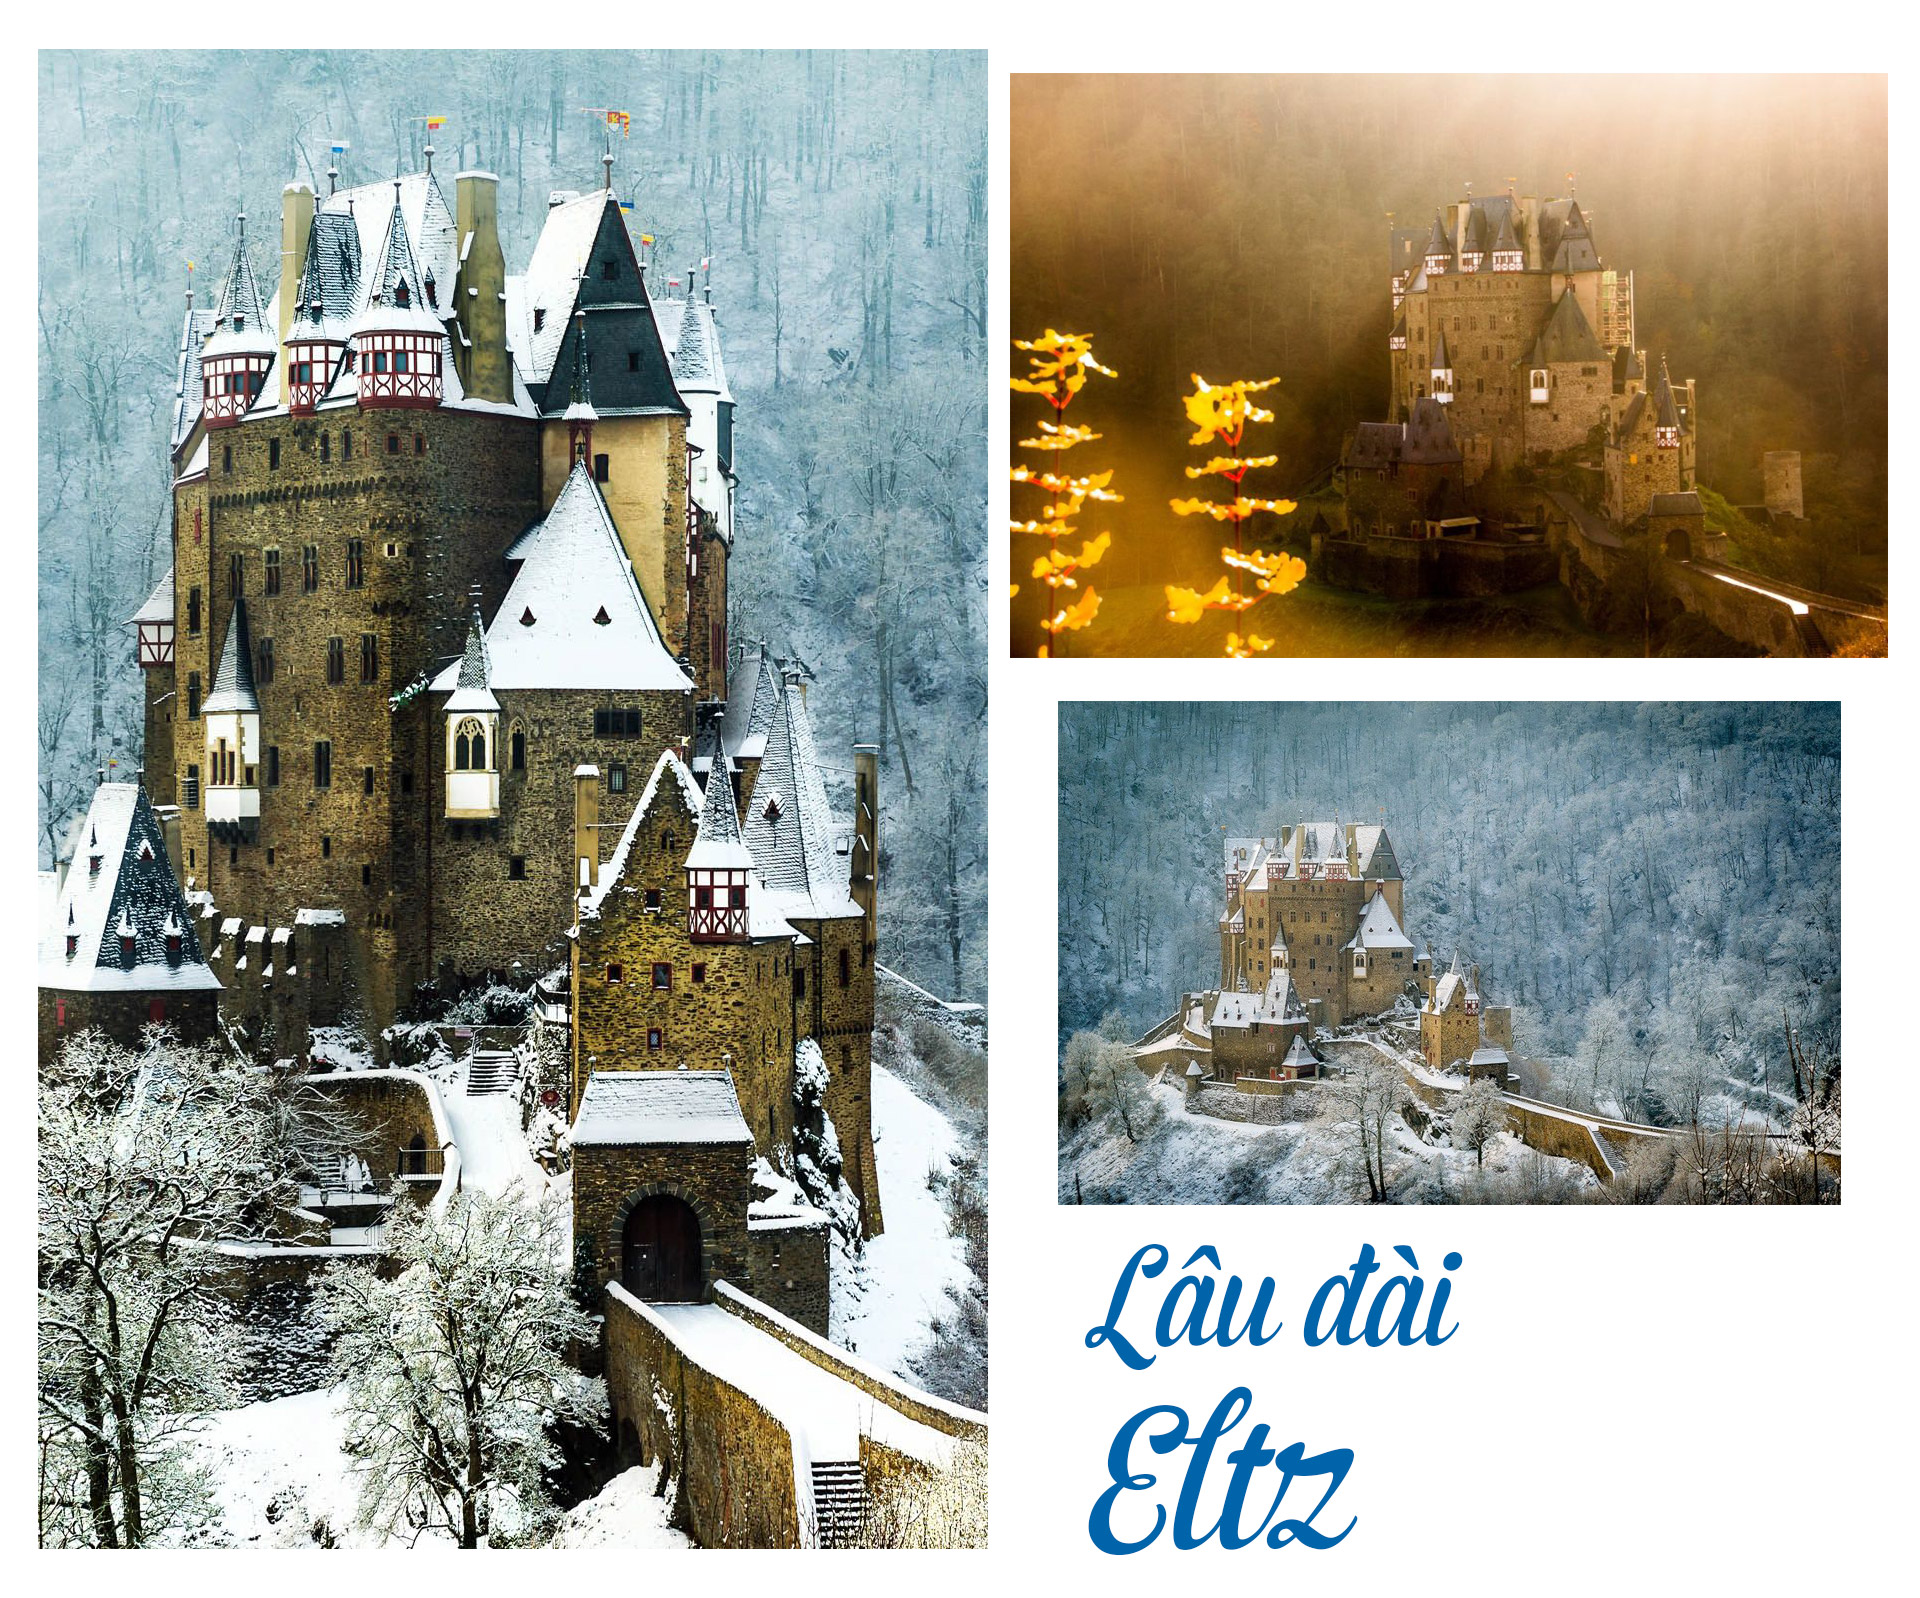 17 lâu đài cổ tích châu Âu đáng đến thăm vào mùa đông - 6